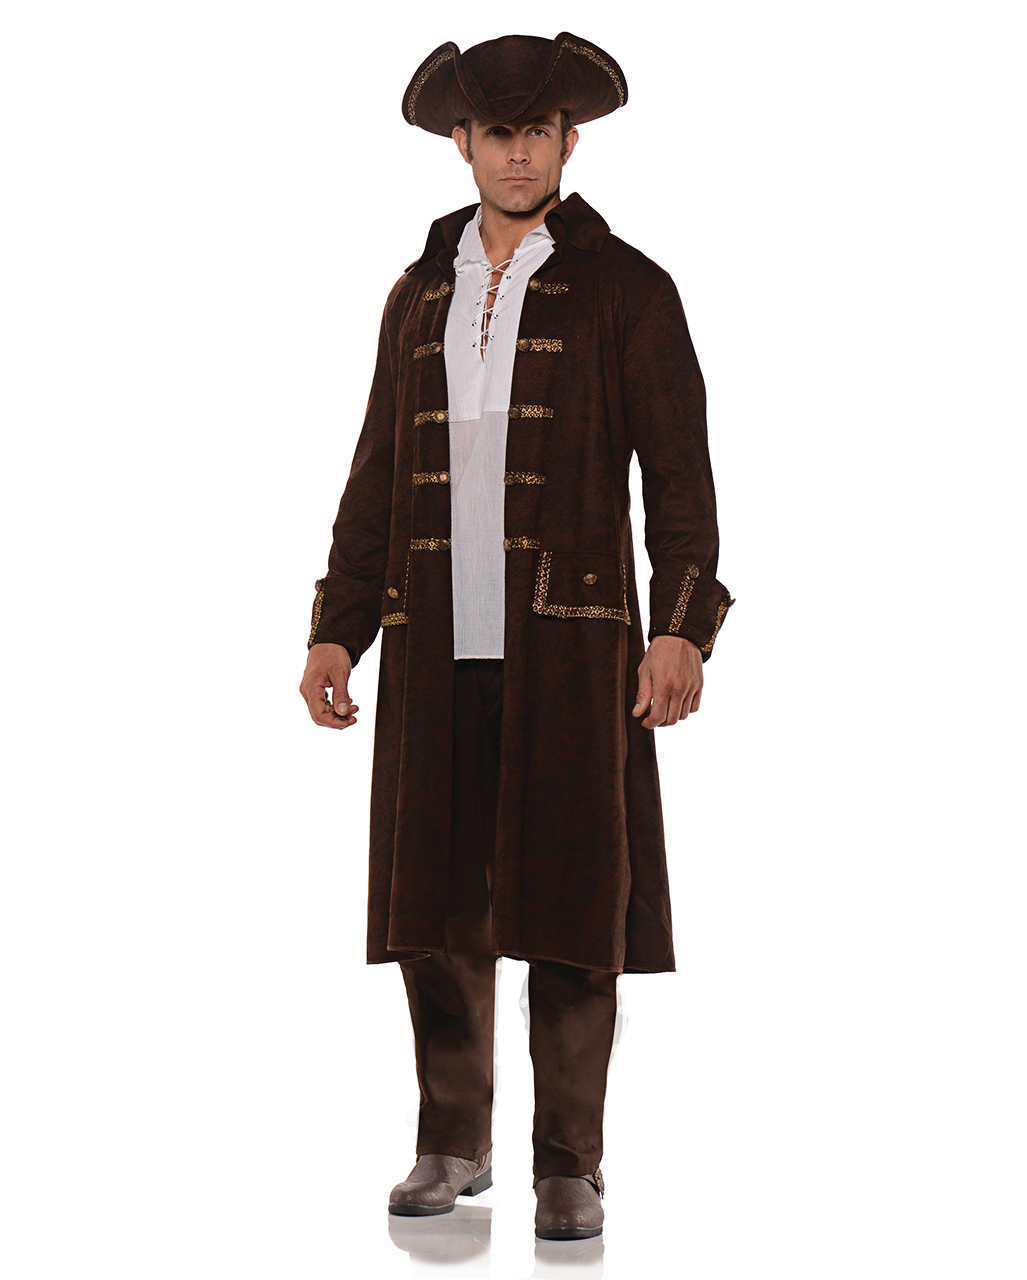 Piraten Kostüm Mantel mit Hut für Halloween Standard von Horror-Shop.com